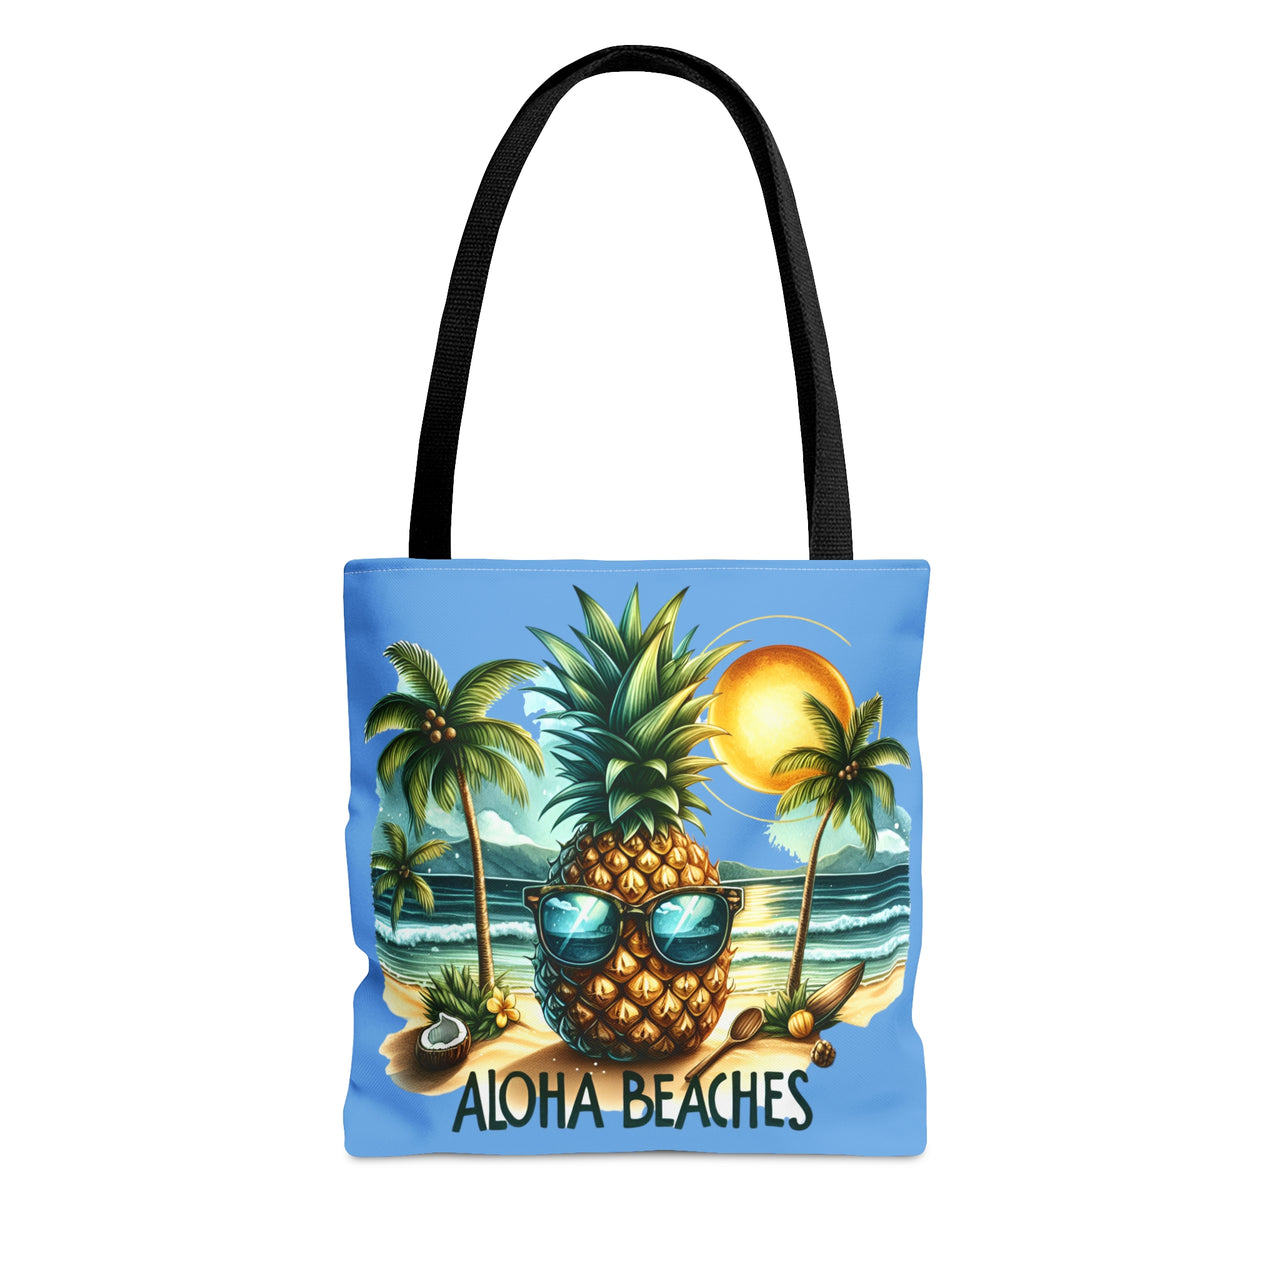 Aloha Beaches Tote Bag